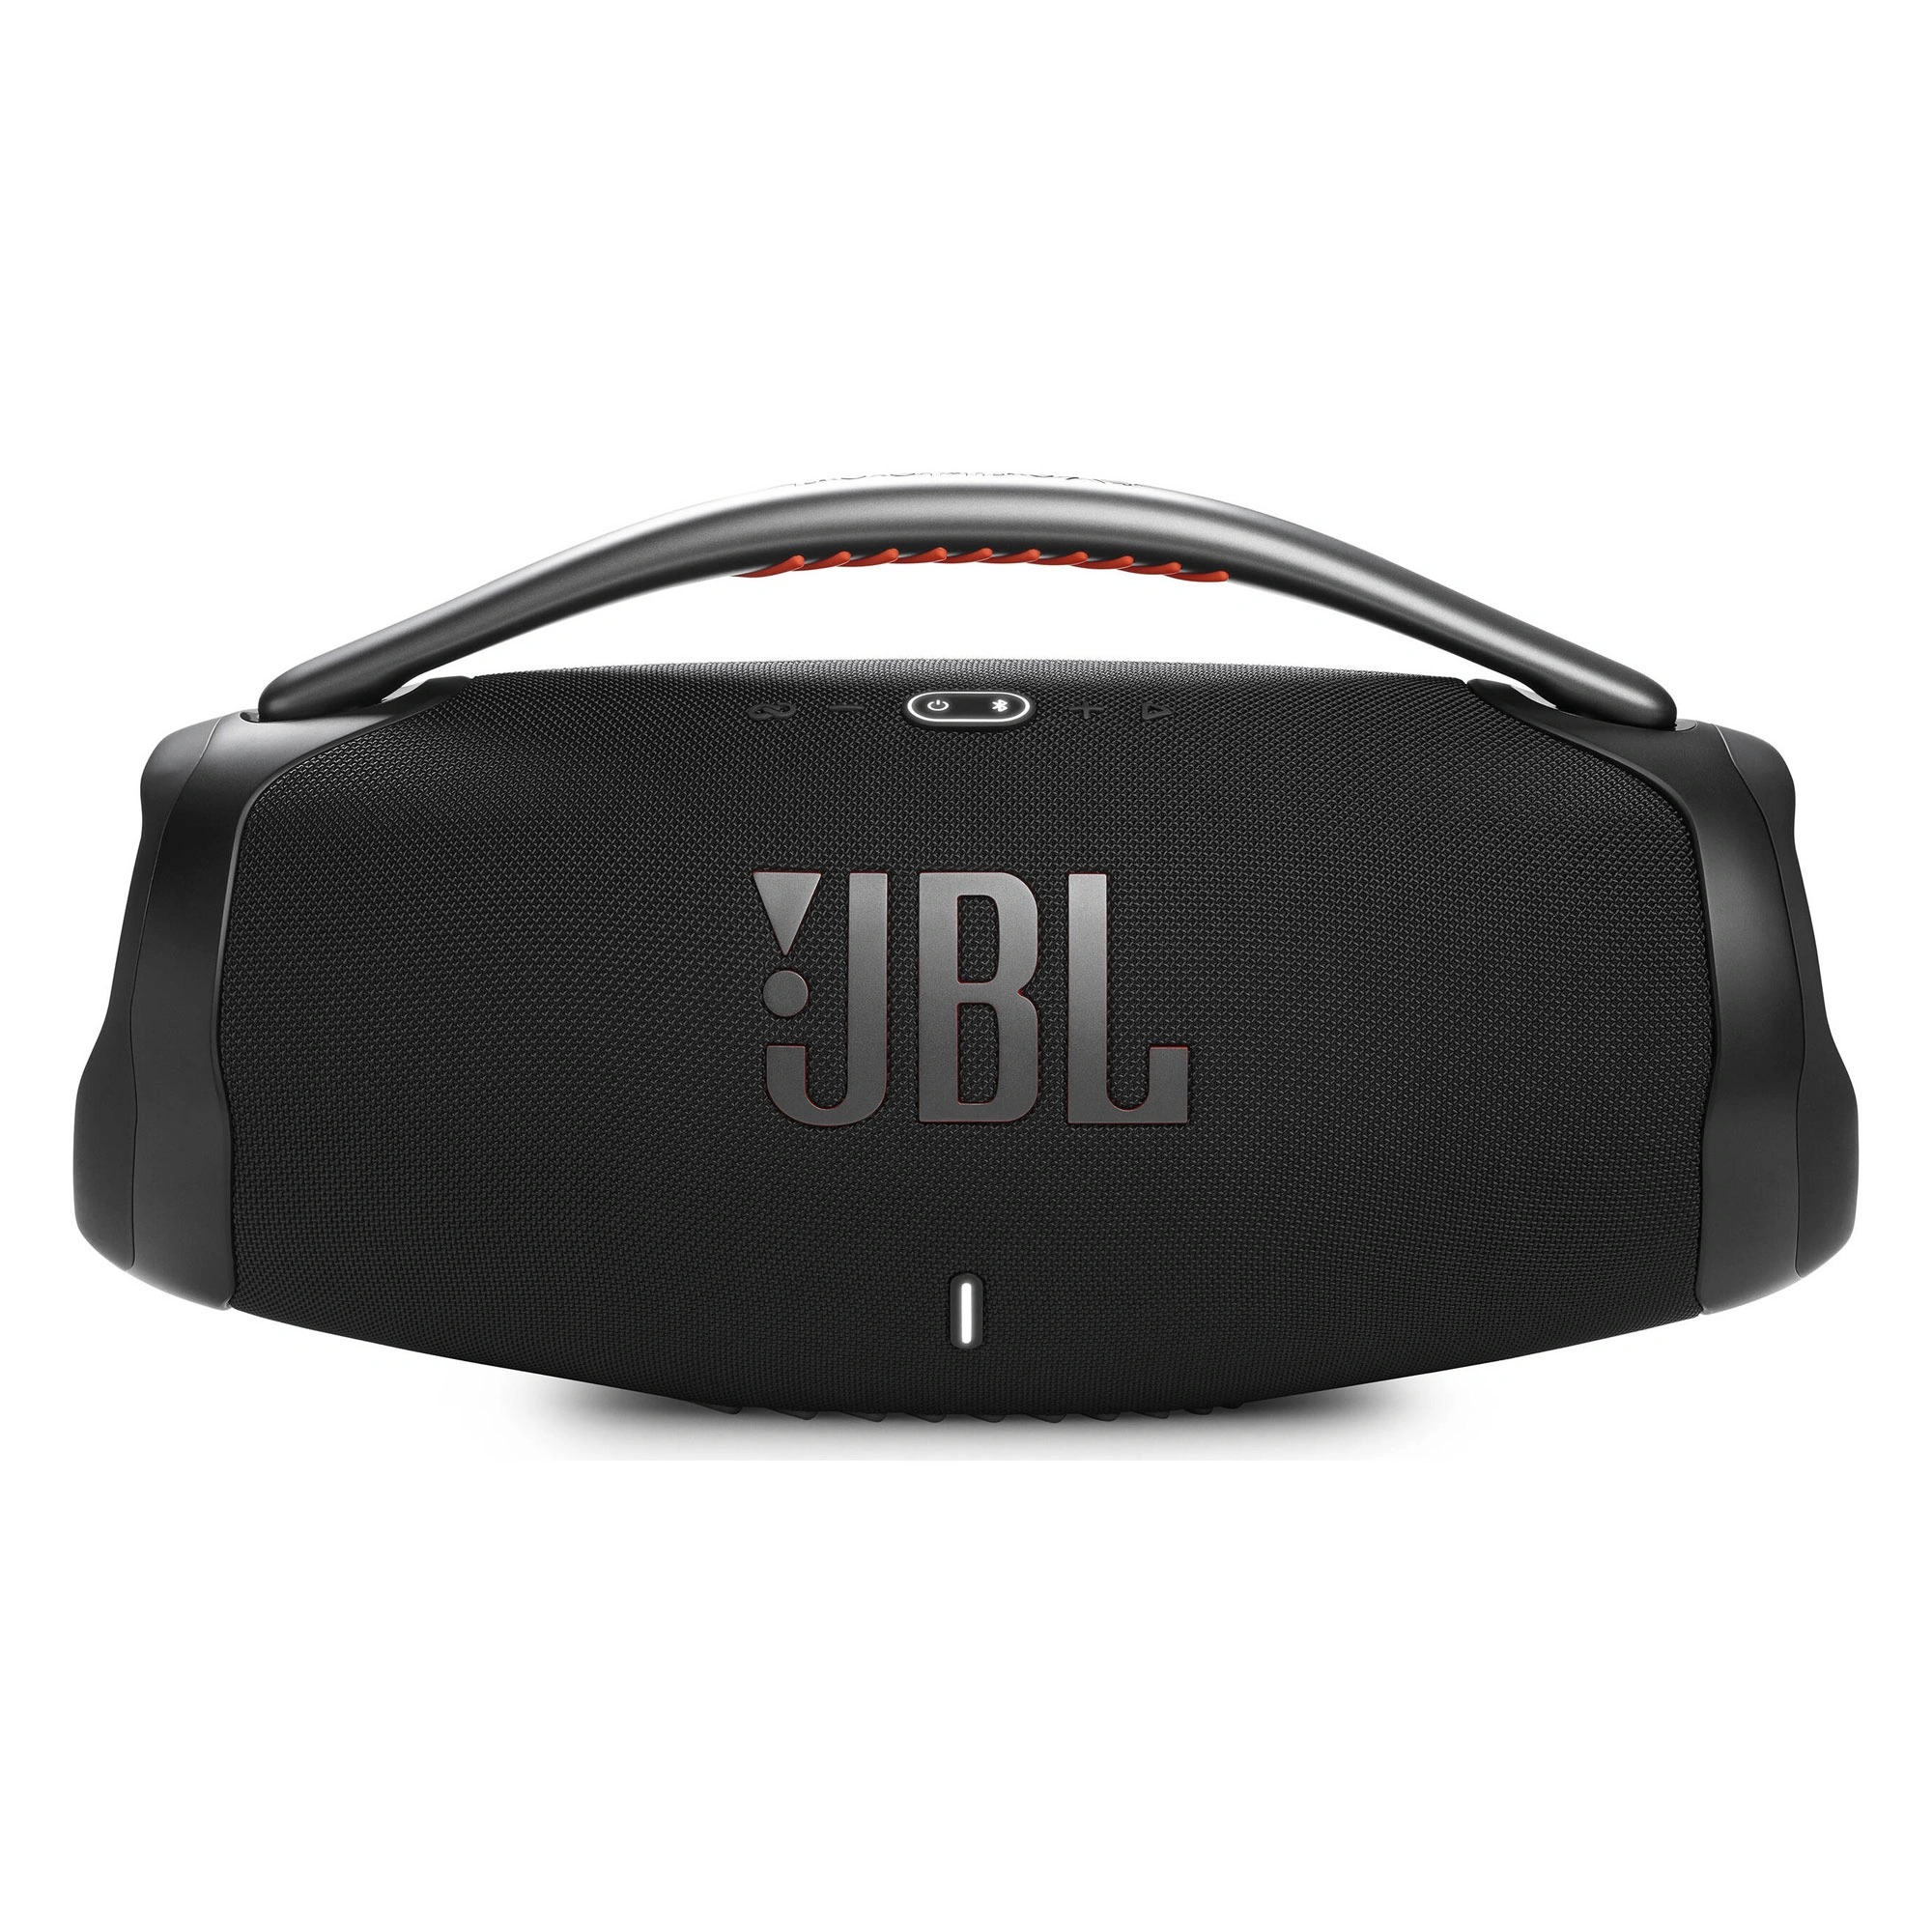 Портативная акустика JBL Boombox 3 Black (JBLBOOMBOX3BLKEP) поездка на святки повесть гагарин е